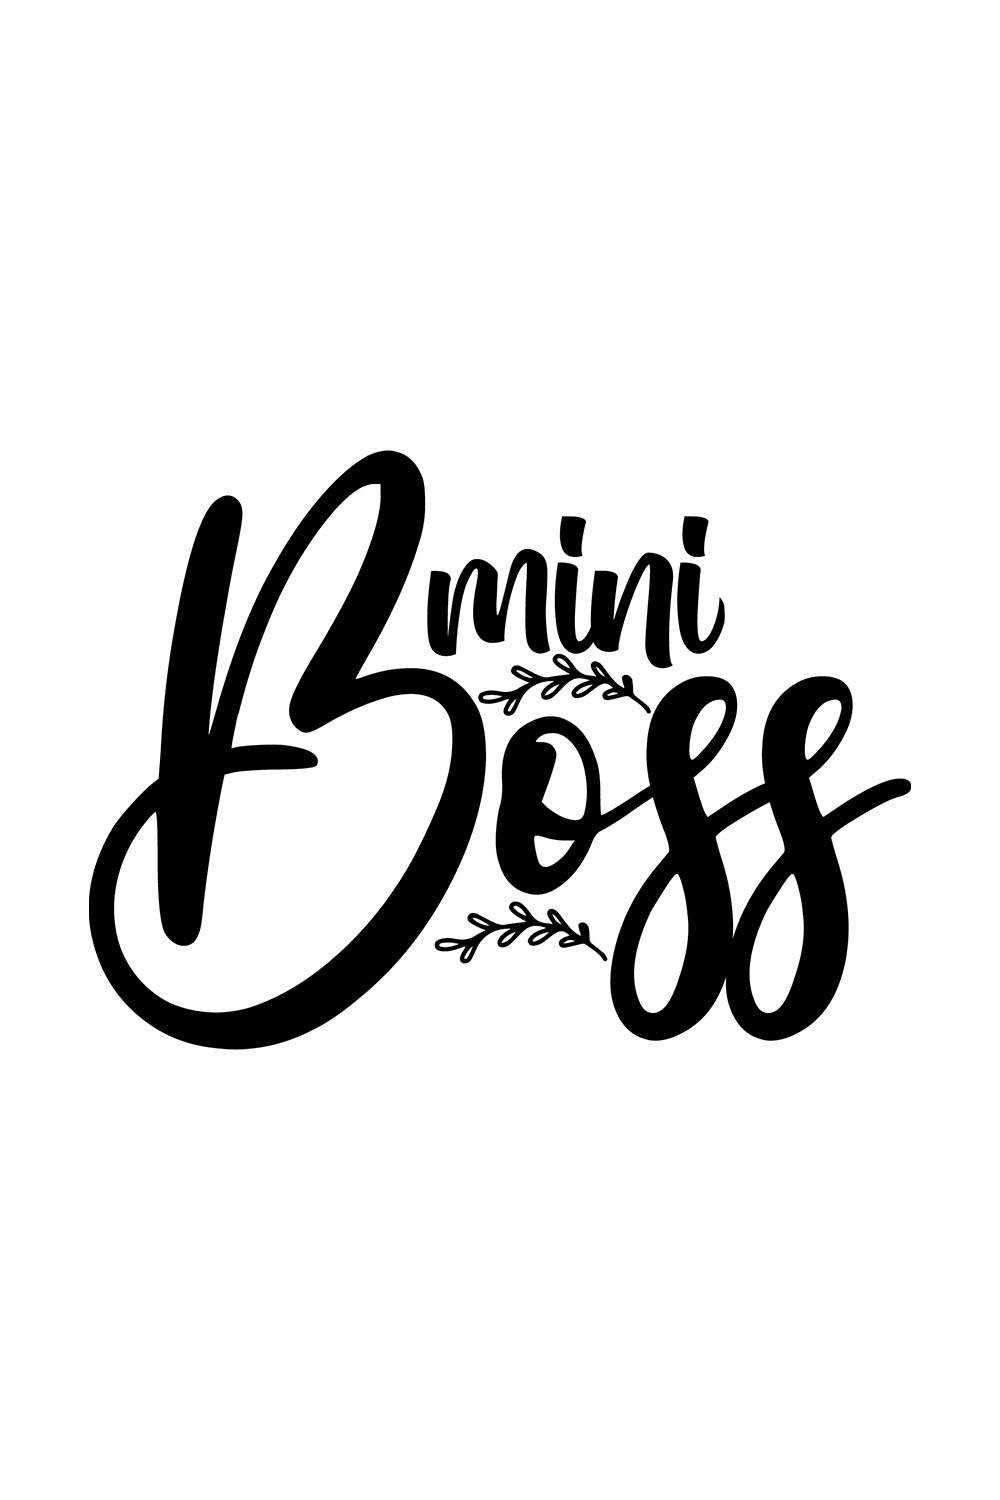 Image with unique black inscription mini boss.